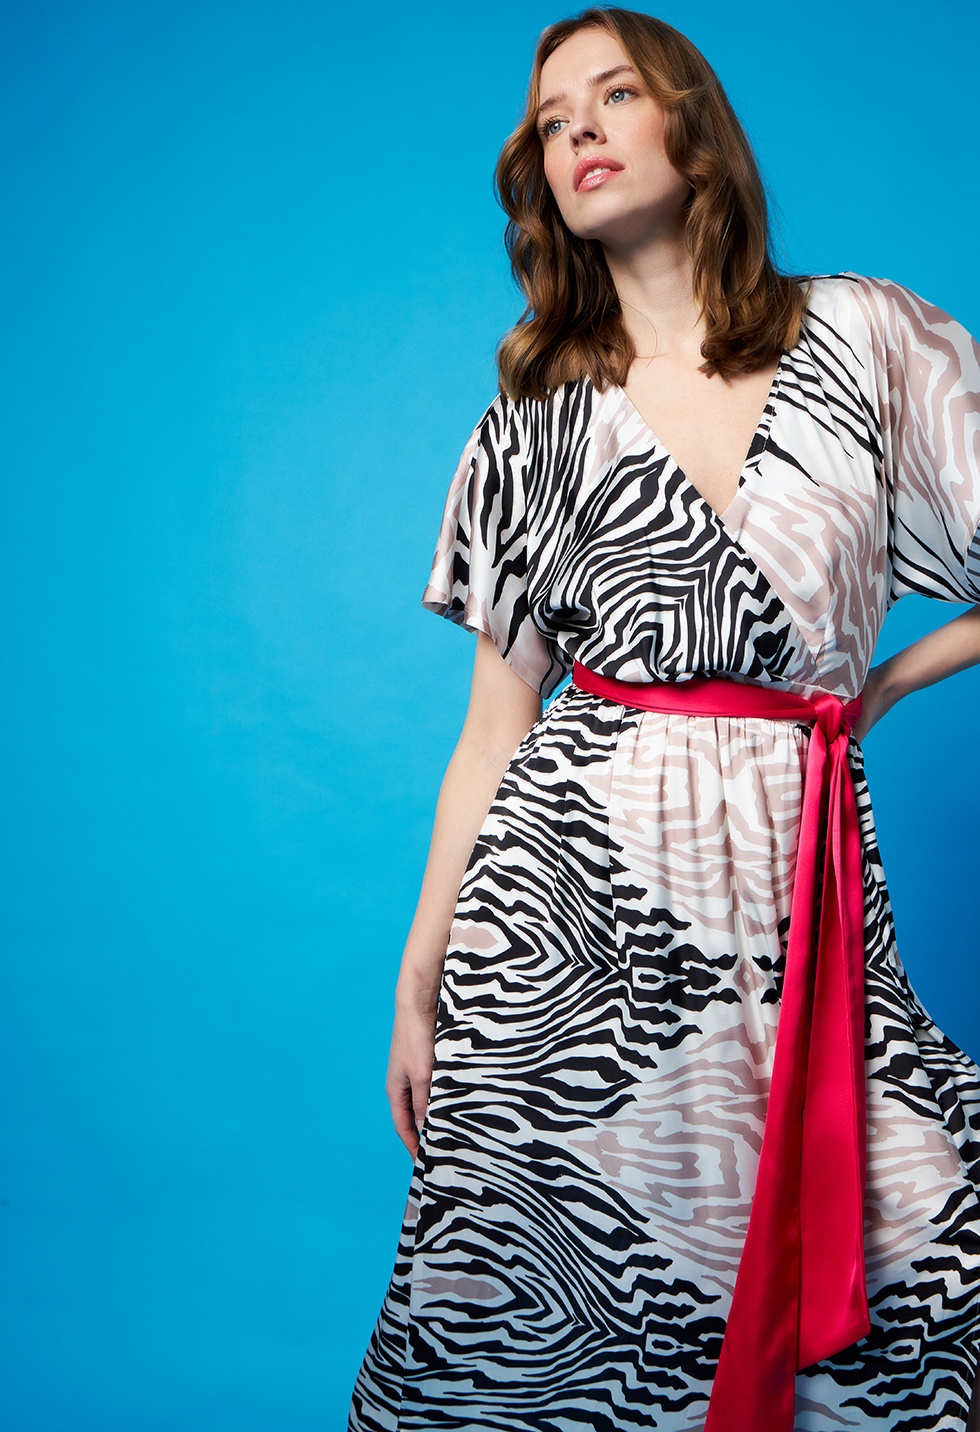 Wrap dress with zebra print